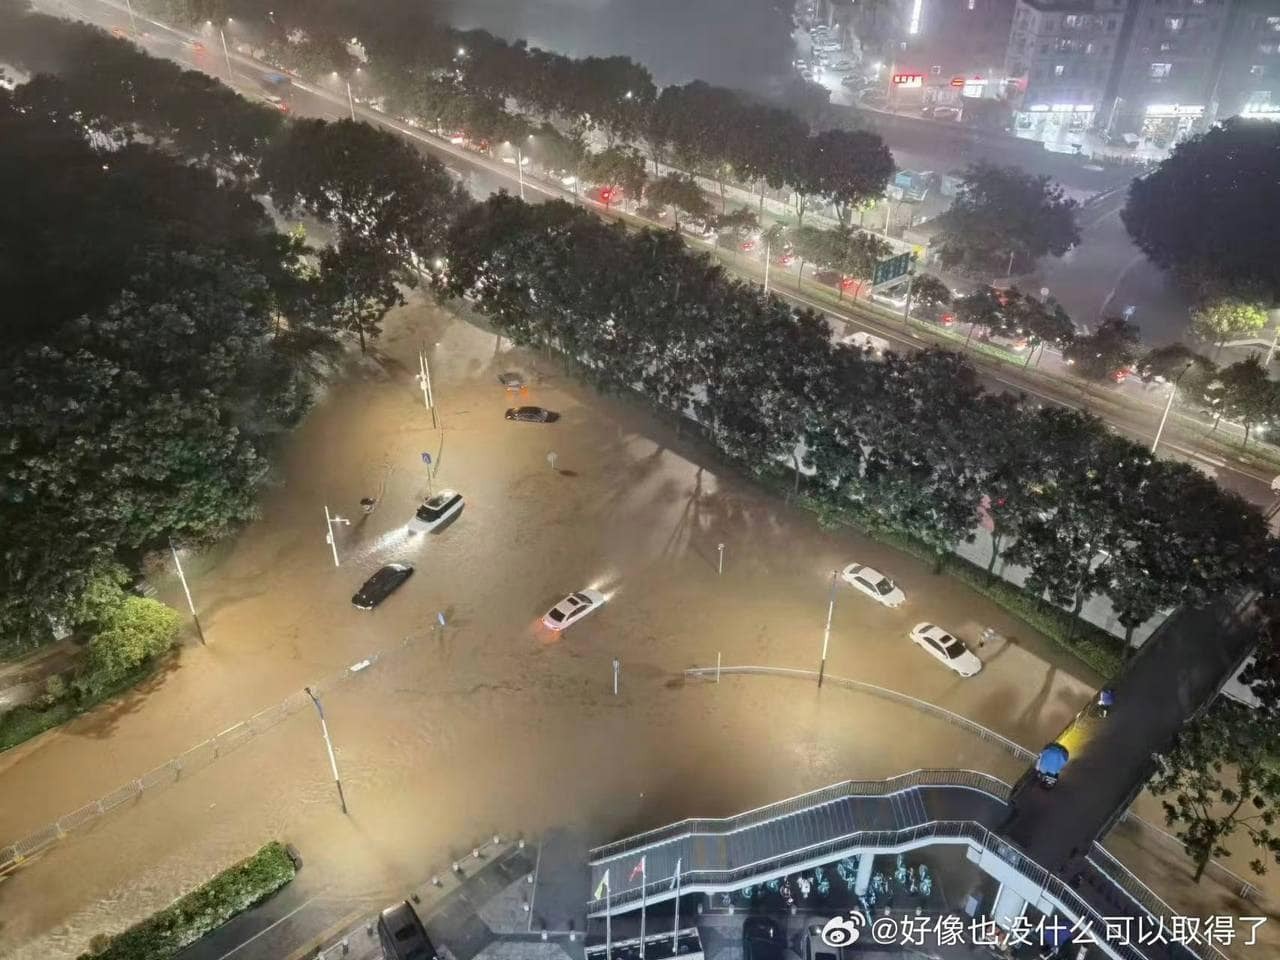 香港世紀暴雨 大致恢復正常但維持極端天氣警告